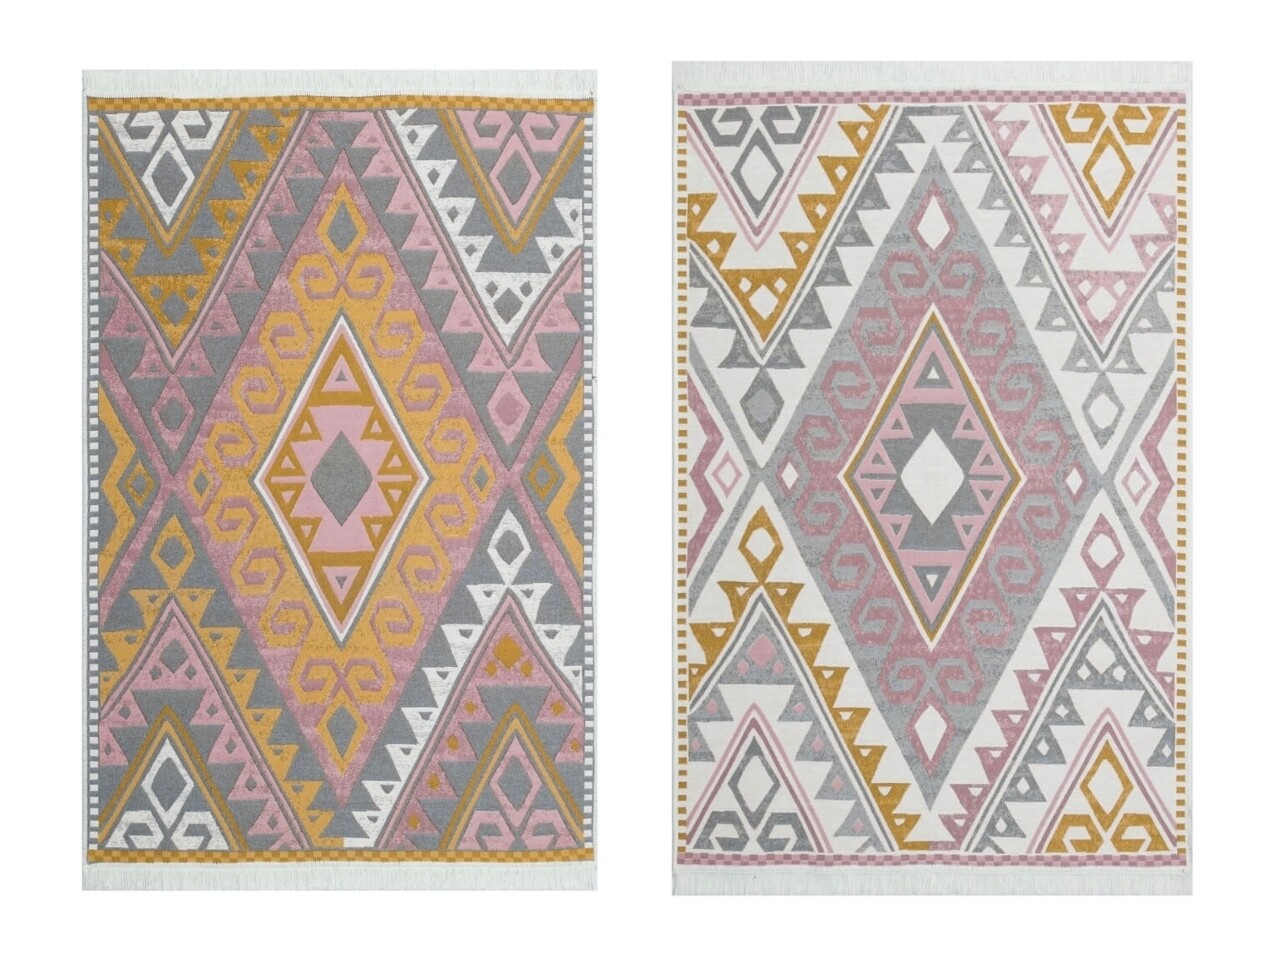 Kilim szőnyeg 2 oldallal, Arya 08 Pink / Yellow, Baketo, 100% újrahasznosított pamut, 160x230 cm